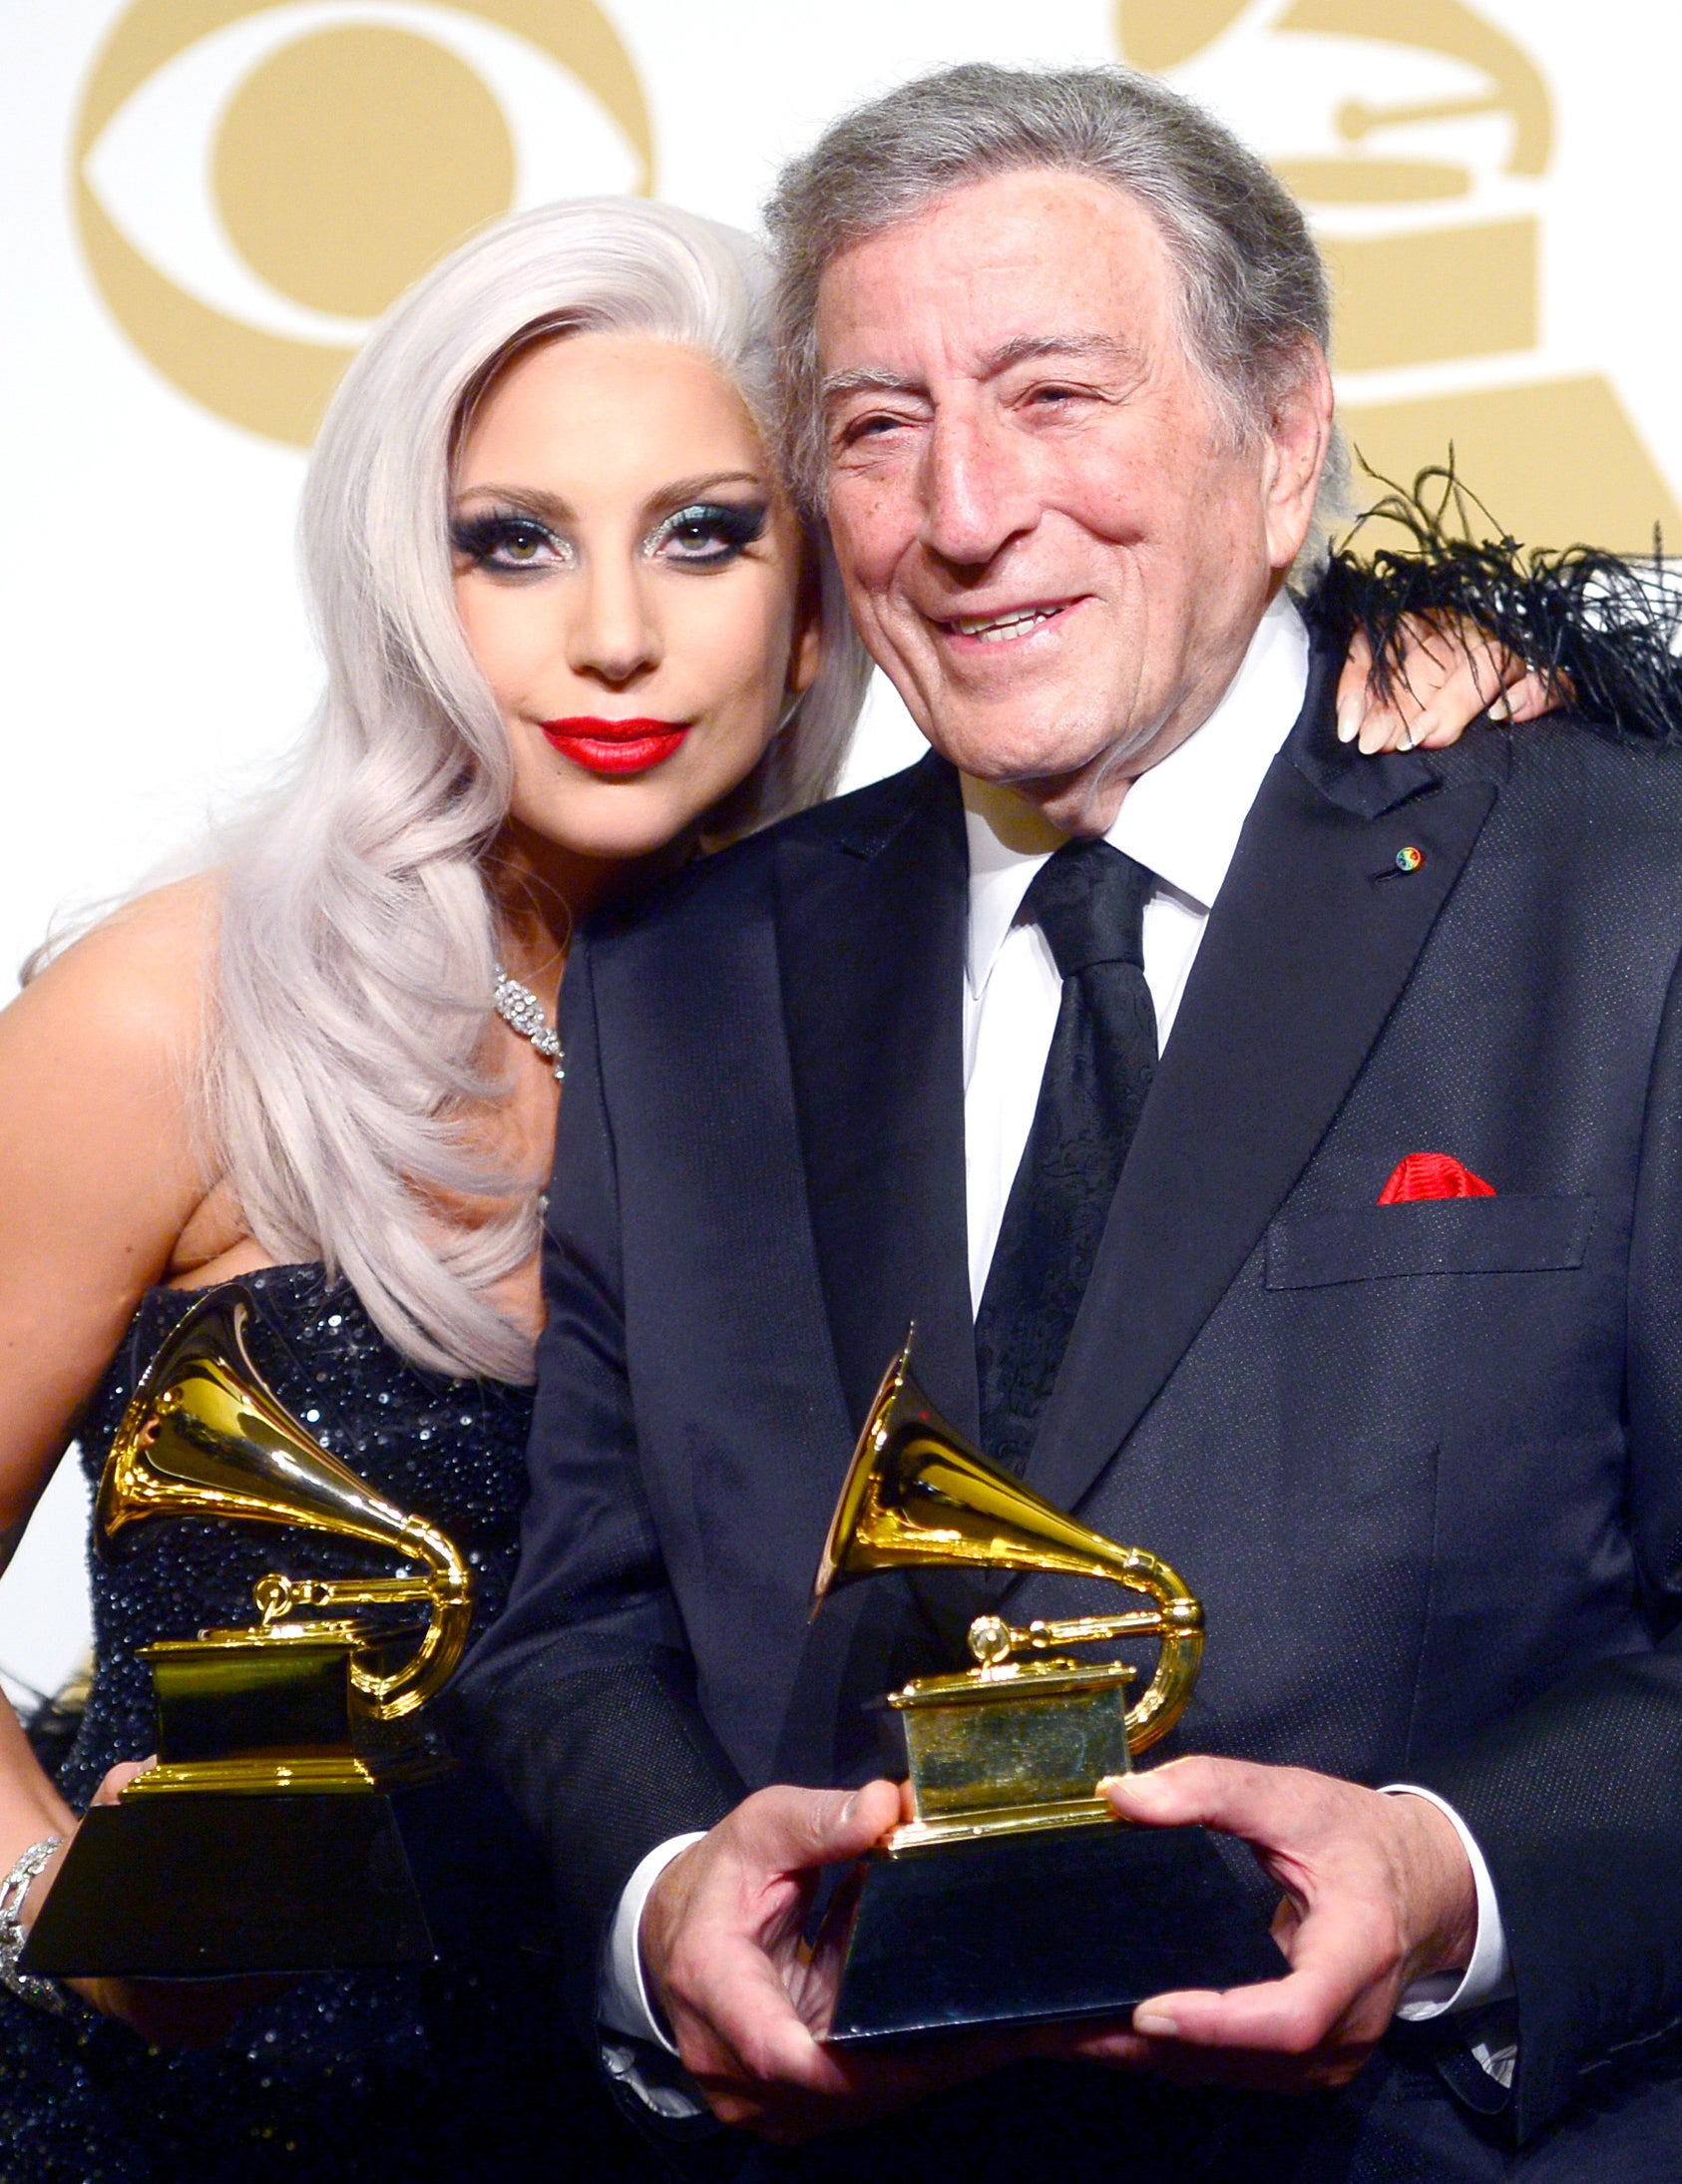 Tony and Gaga holding Grammys